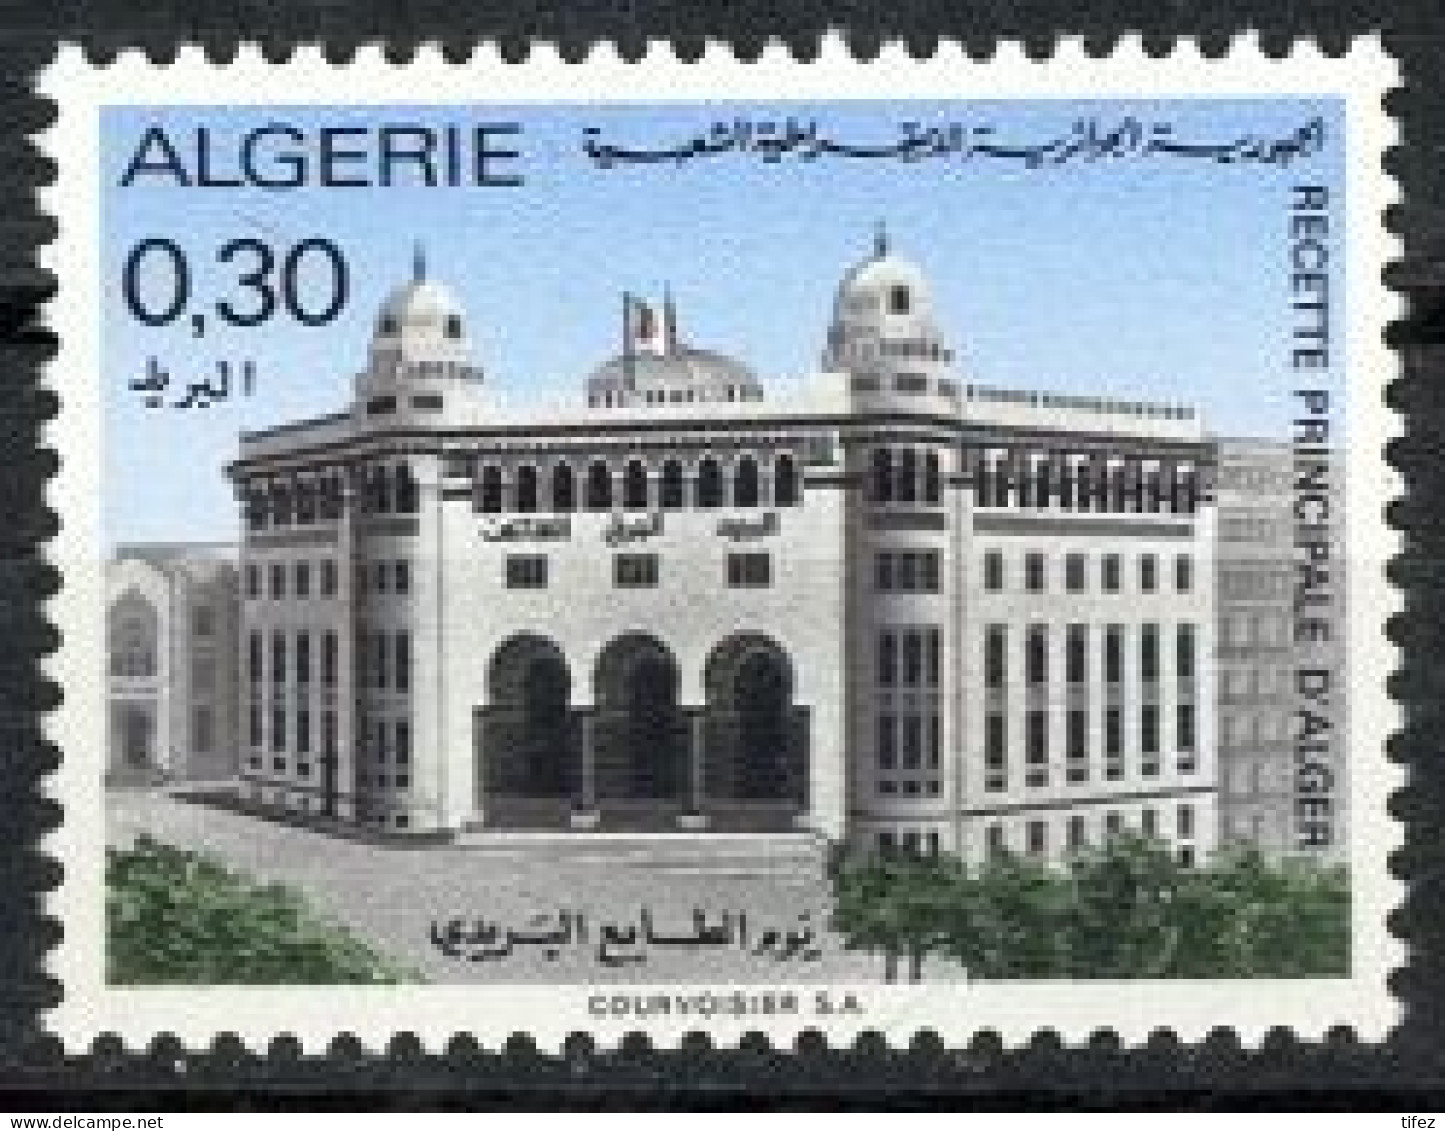 Année 1971-N°530 Neufs**MNH : Journée Du Timbre (Grande Poste D'Alger) - Algerien (1962-...)